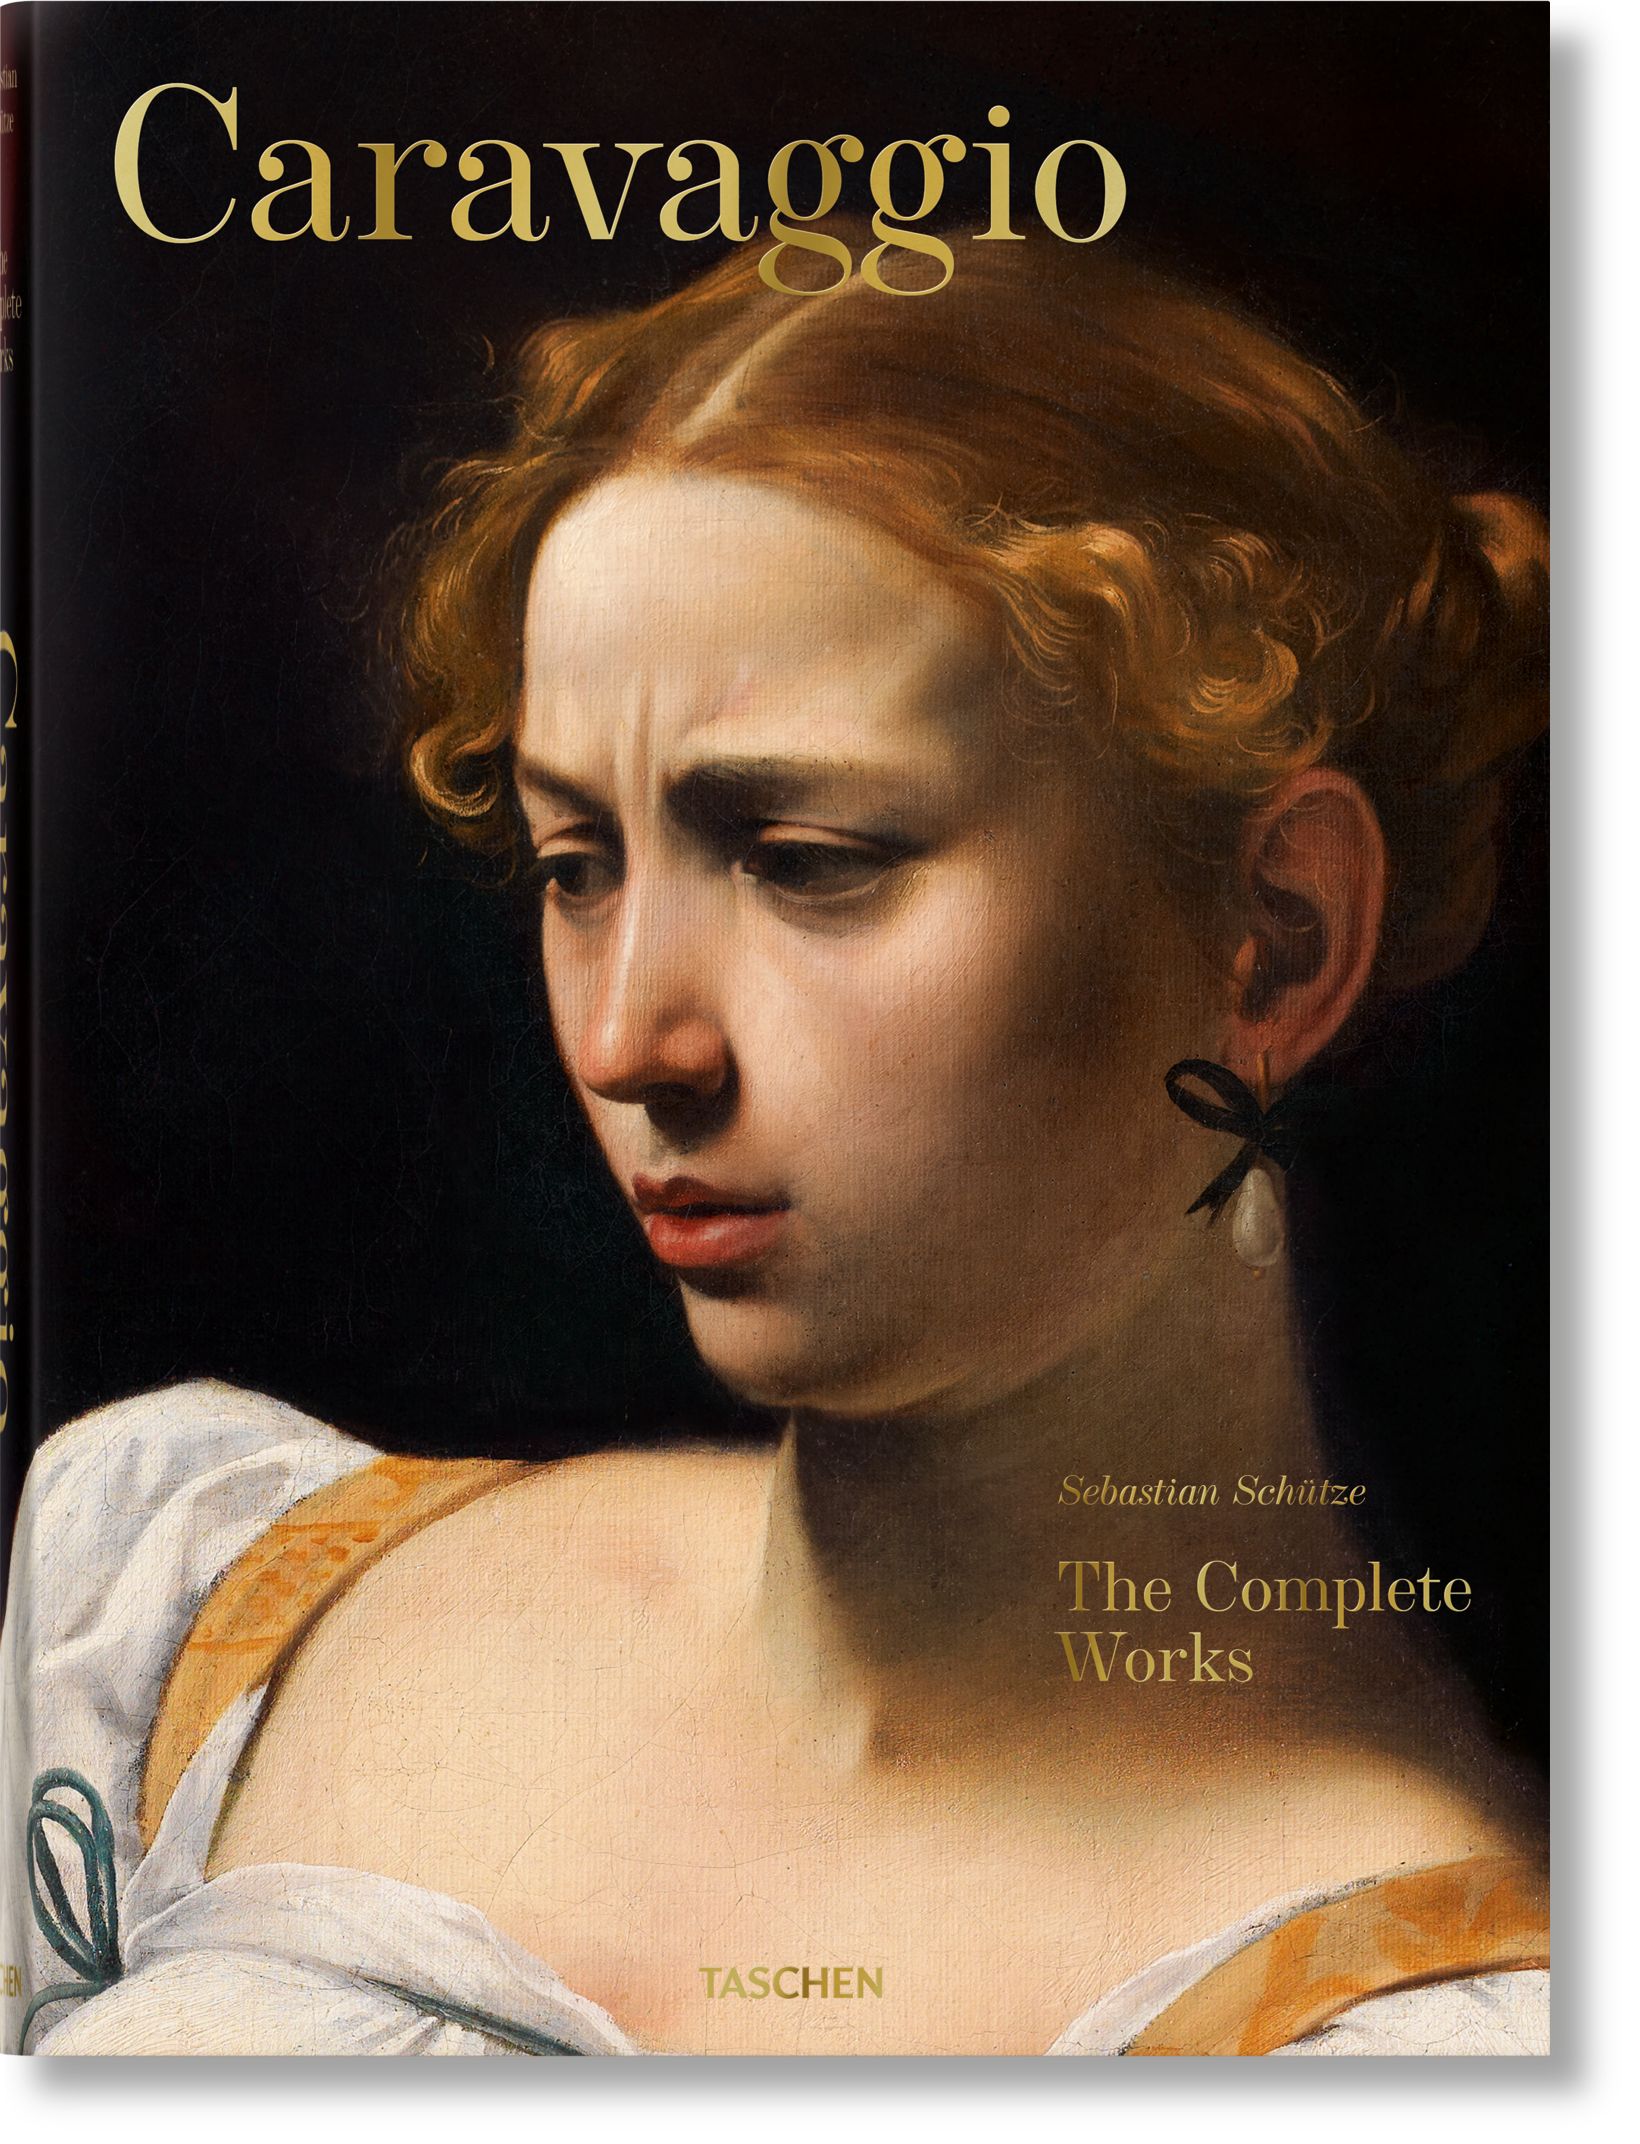 TASCHEN Books: Caravaggio. The Complete Works | TASCHEN